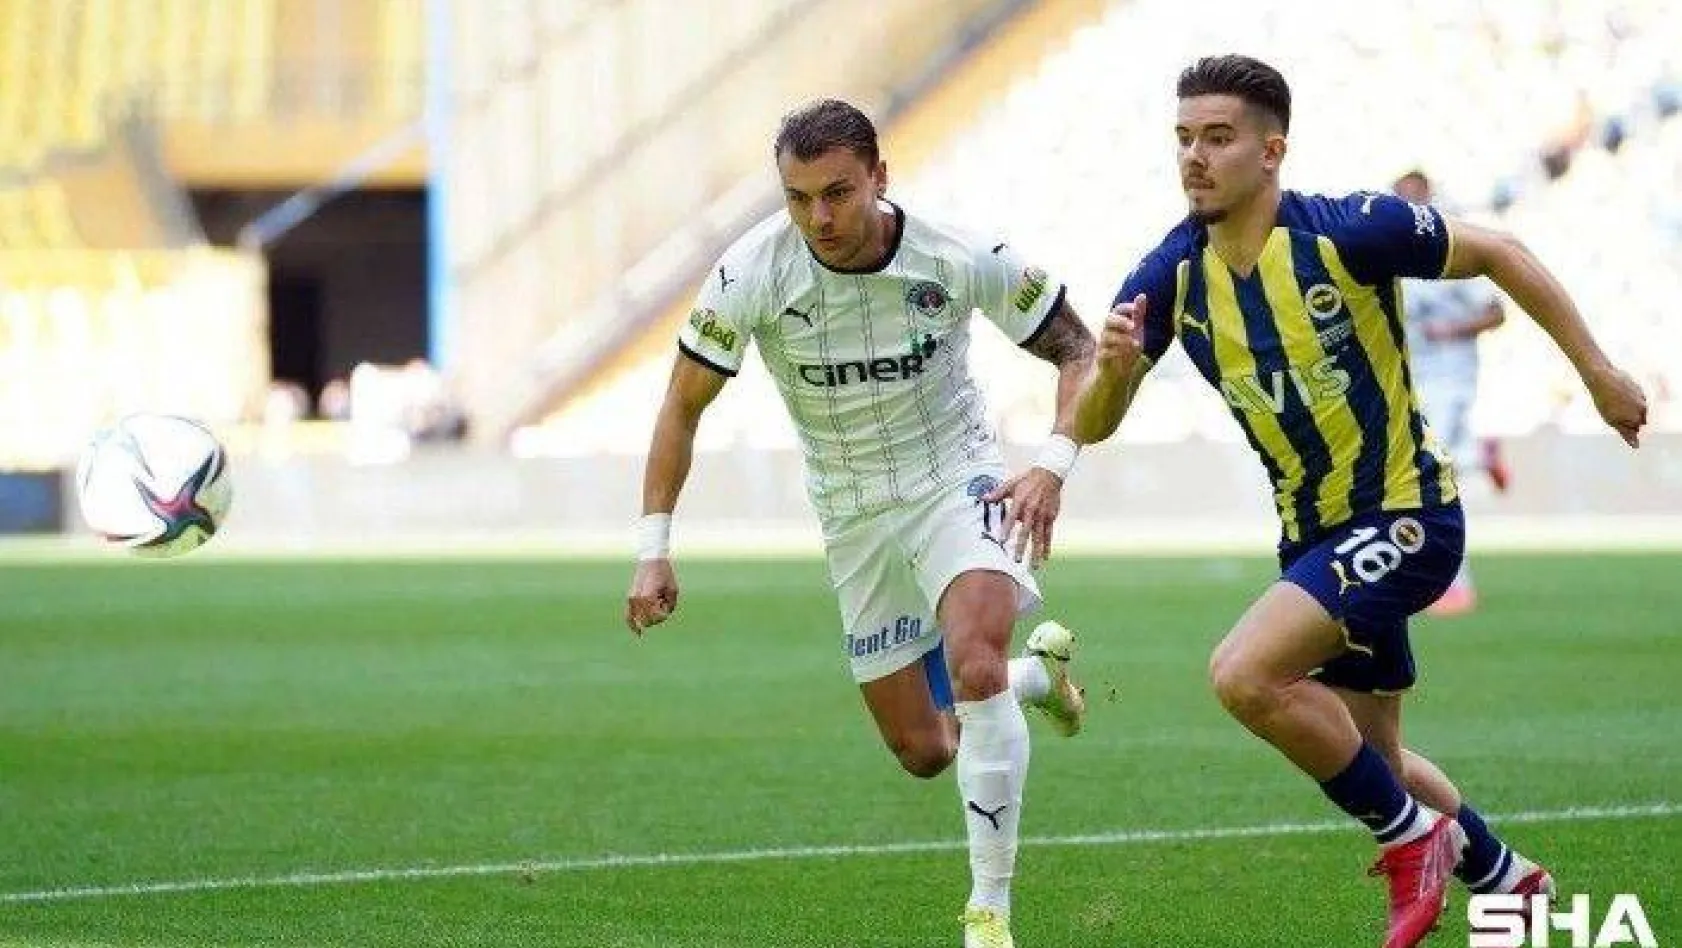 Süper Lig: Fenerbahçe: 0 - Kasımpaşa: 0 (Maç devam ediyor)